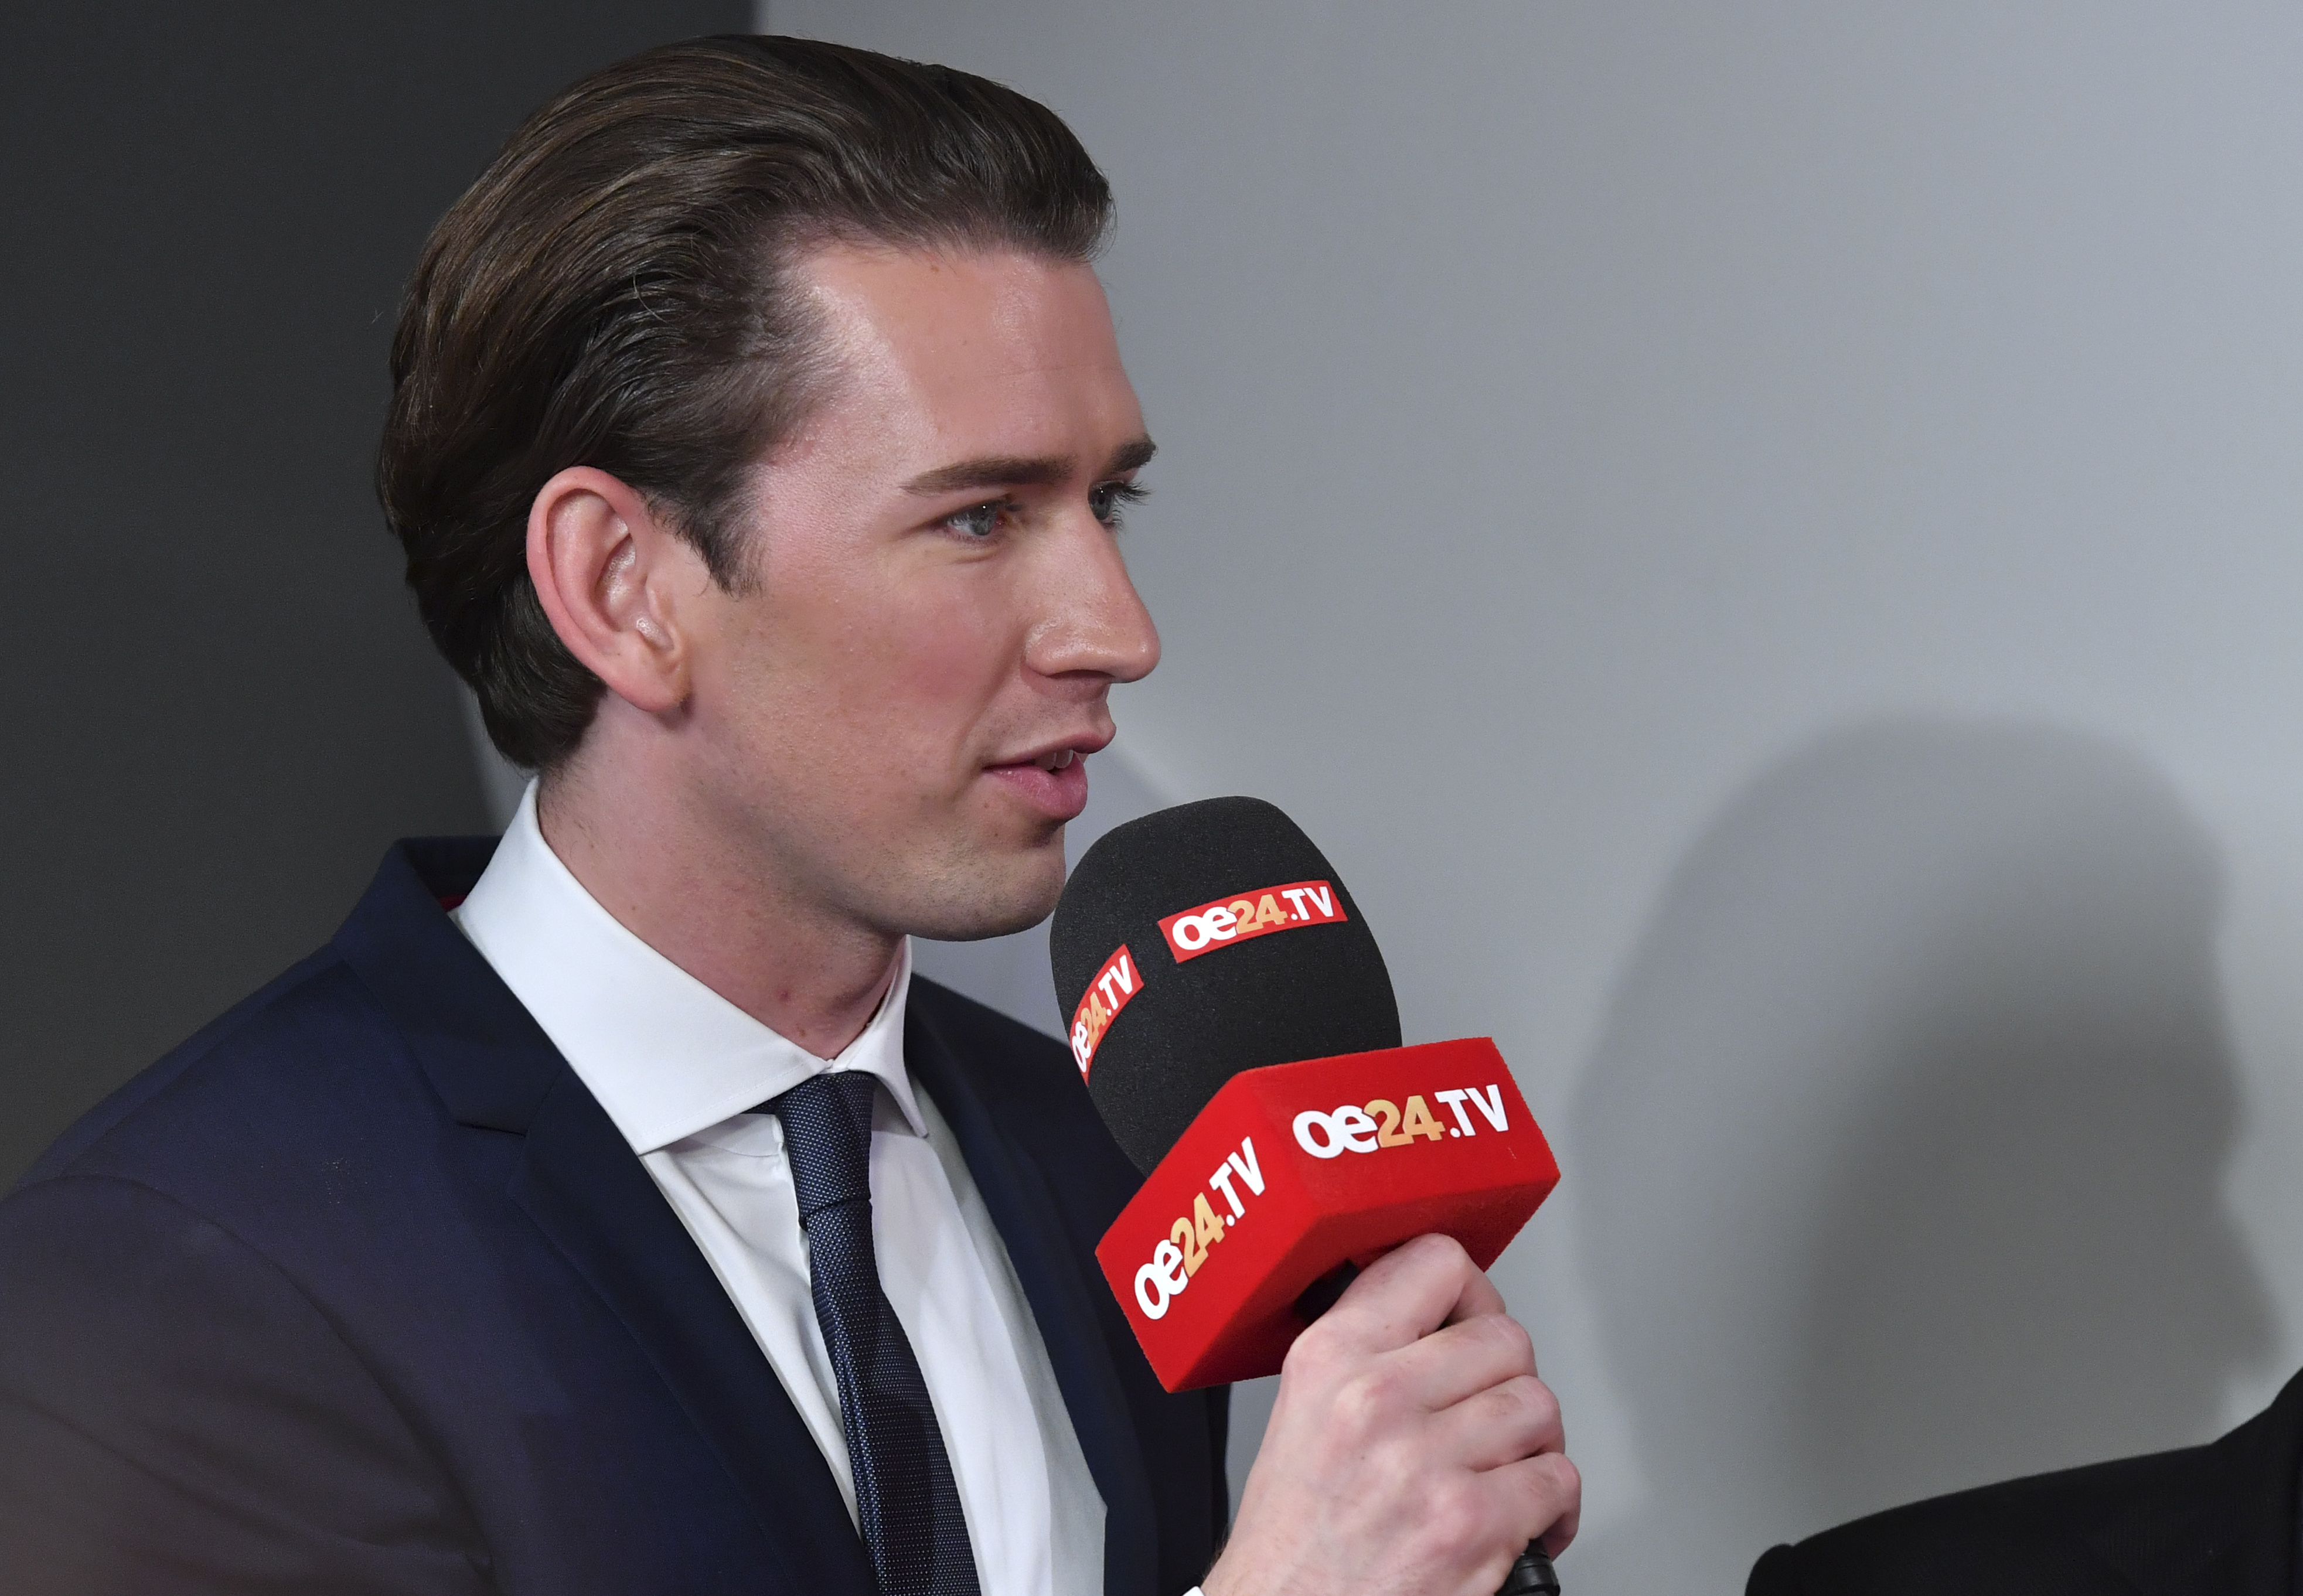 Партията на Себастиан Курц спечели изборите в Австрия благодарение и на неговата младост и харизма